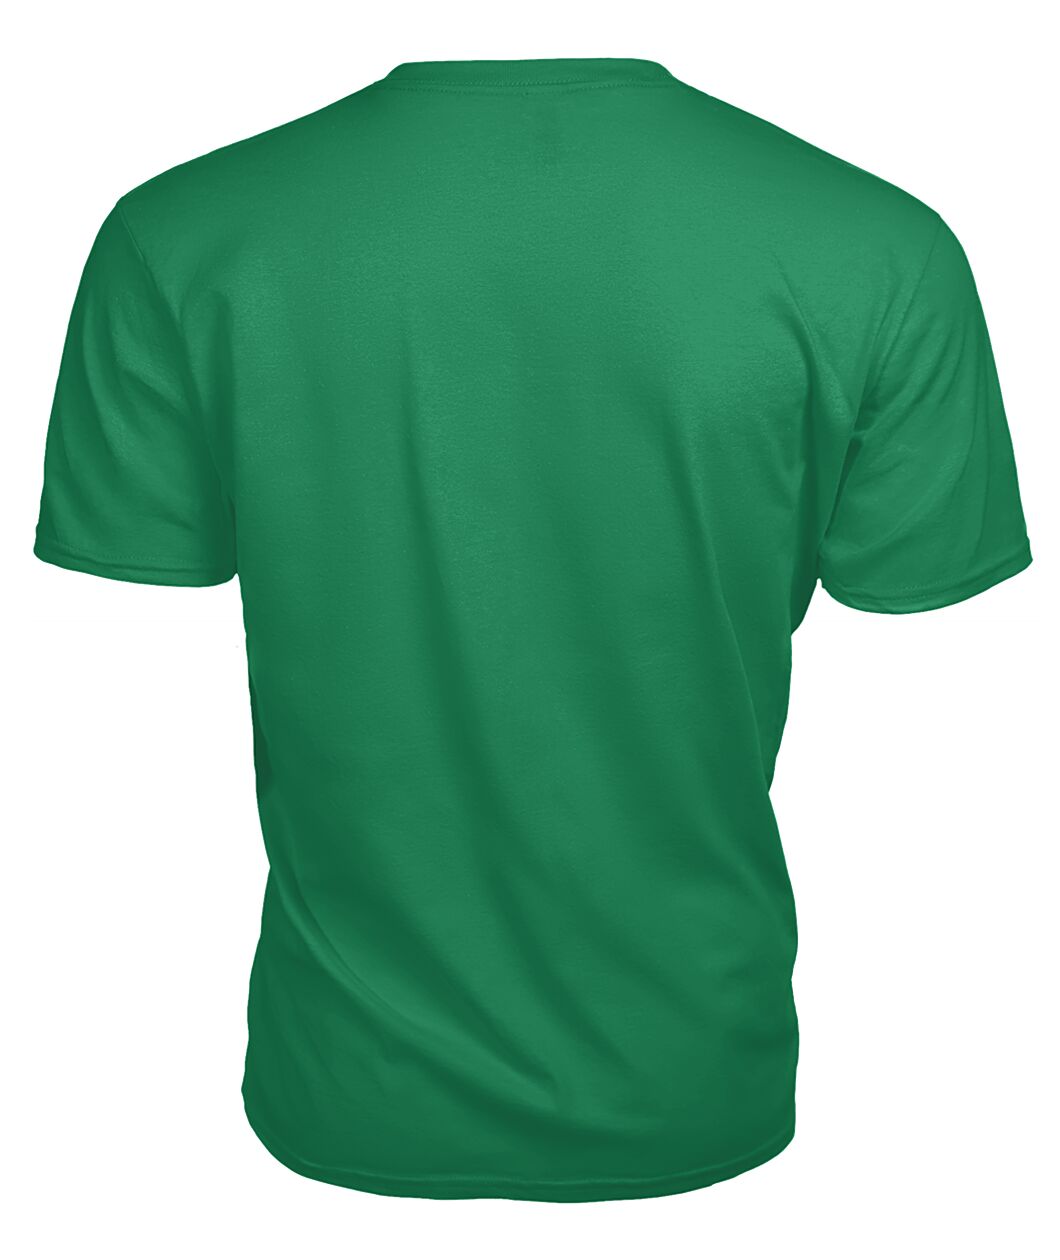 Auchinleck Family Tartan - 2D T-shirt